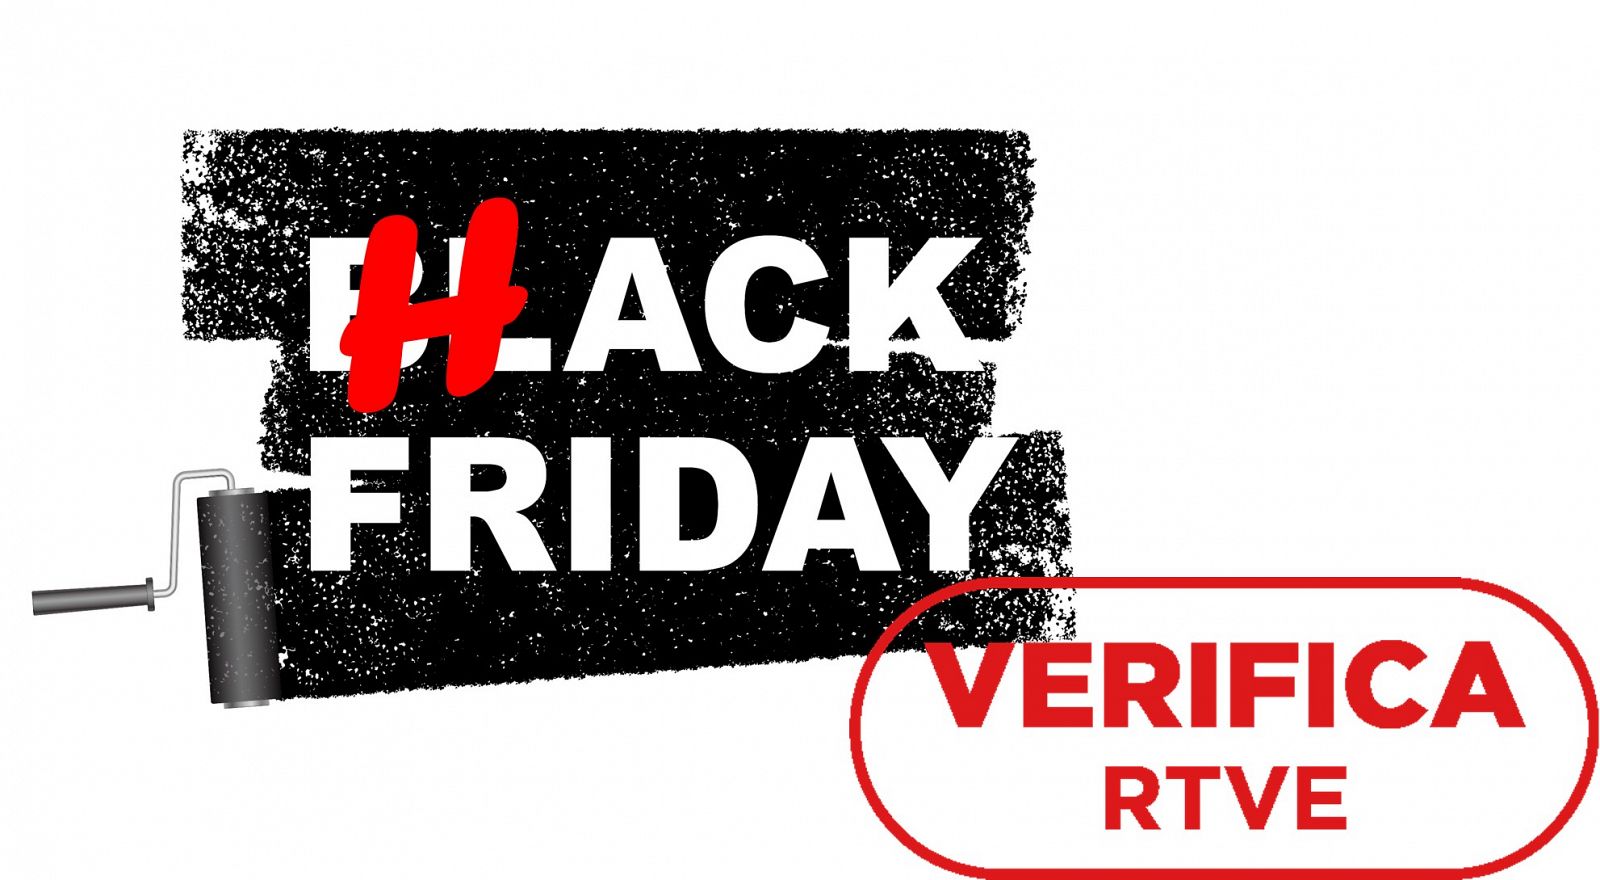 Letras de Black Friday con las letras BL substituidas por una H para crear "Hack Friday", Sello VerificaRTVE